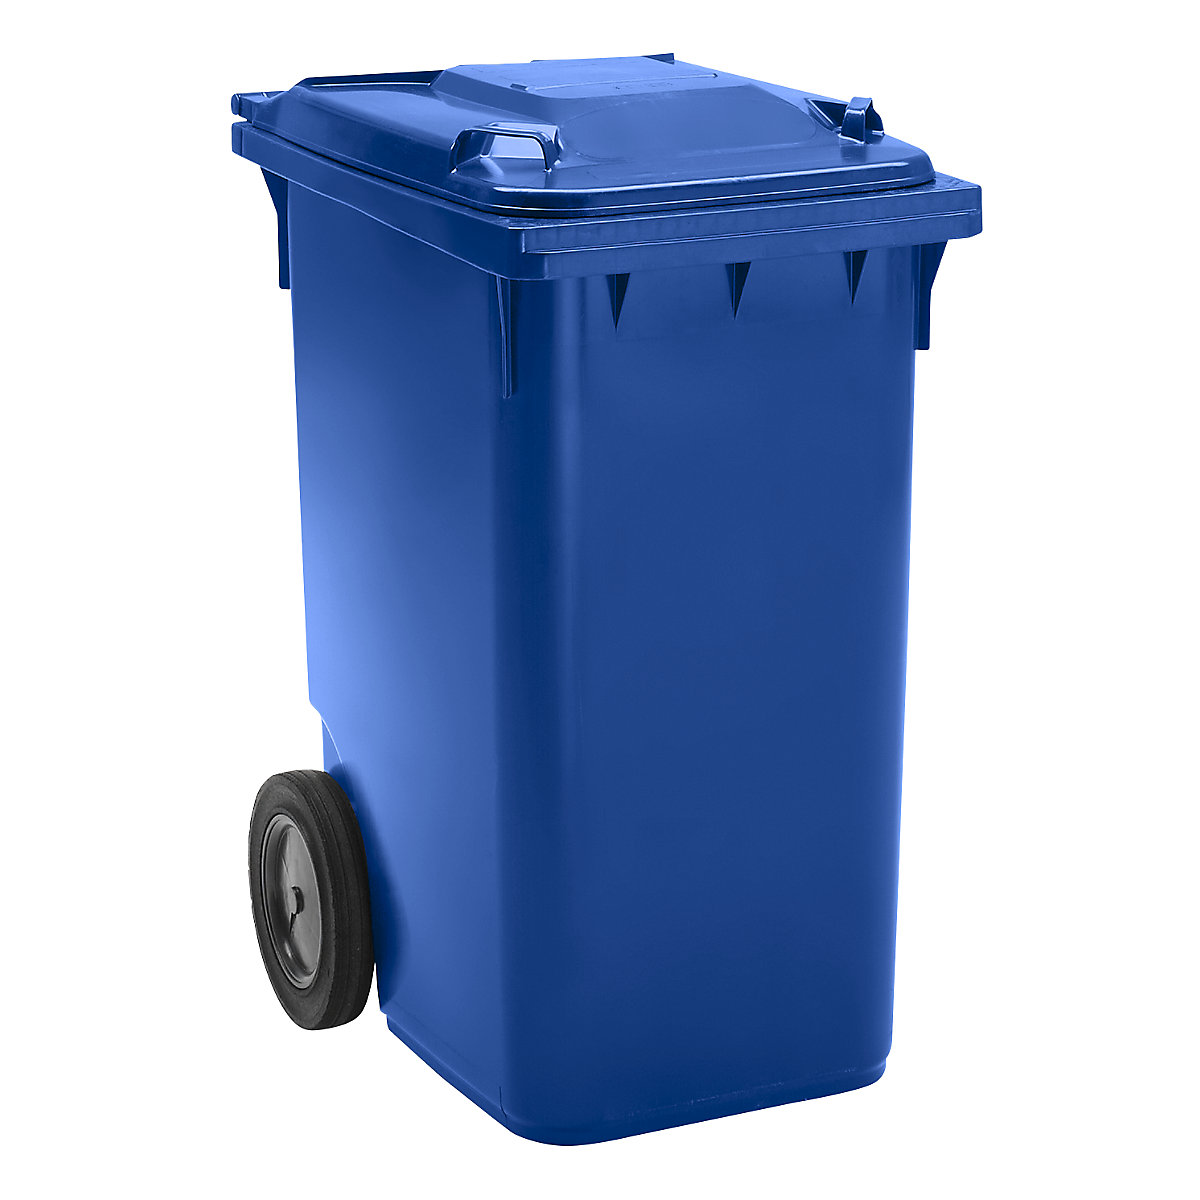 Mülltonne aus Kunststoff DIN EN 840